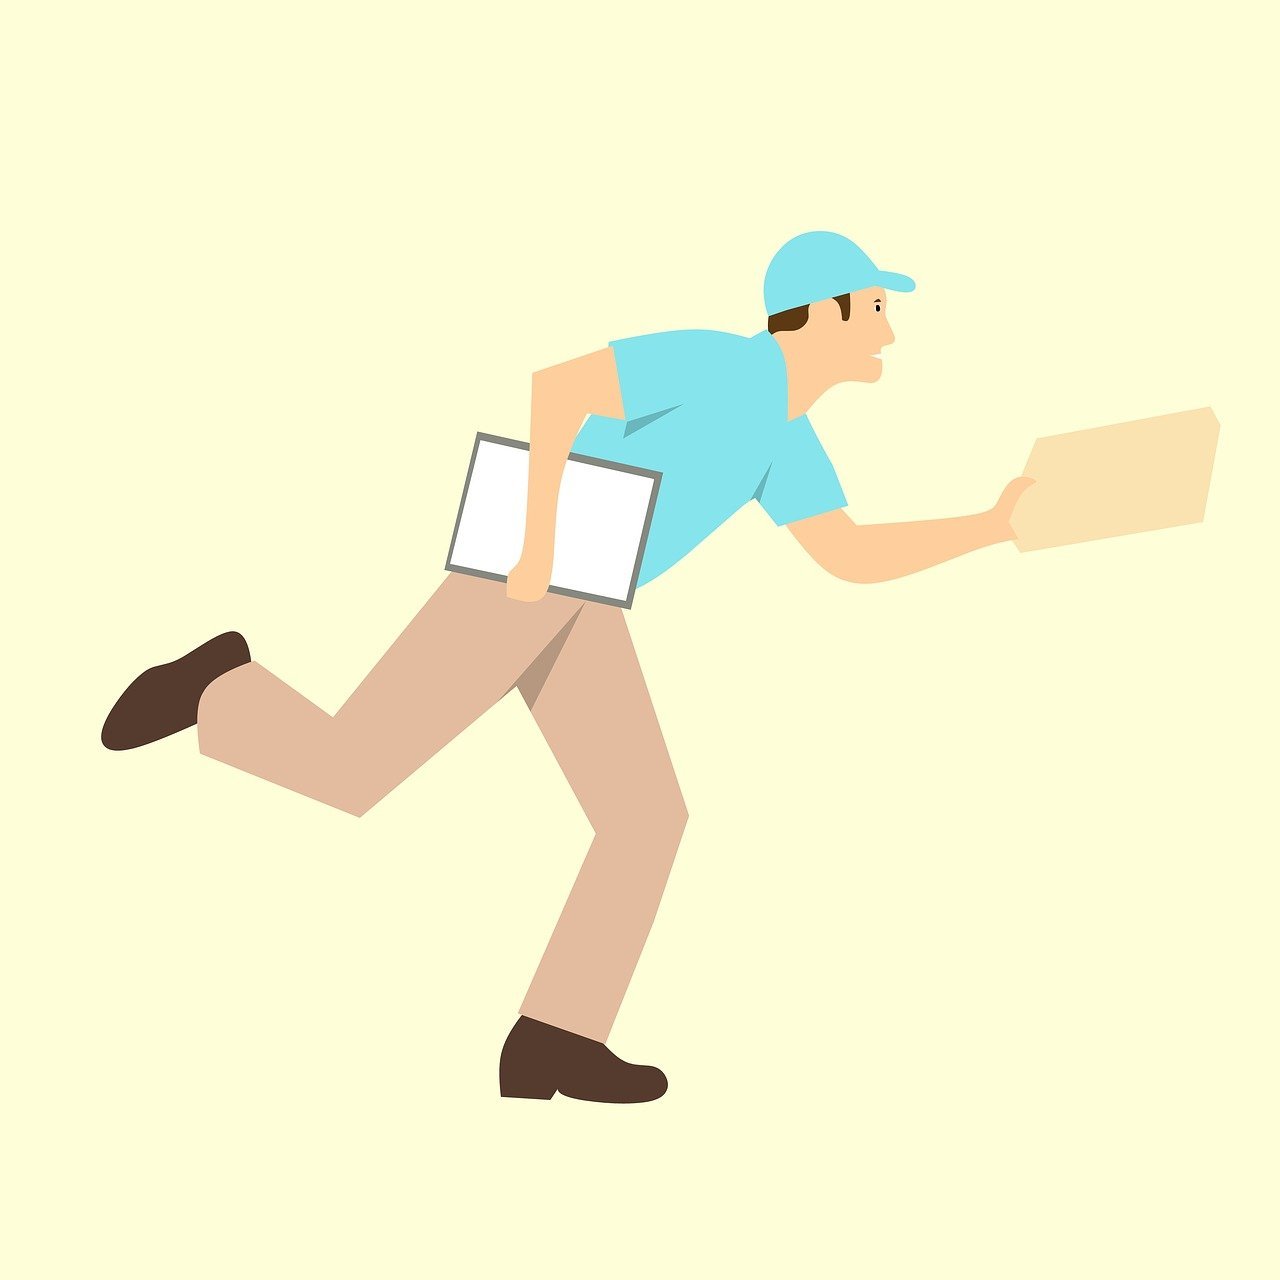 Desenho de carteiro com uniforme azul entregando um pacote.